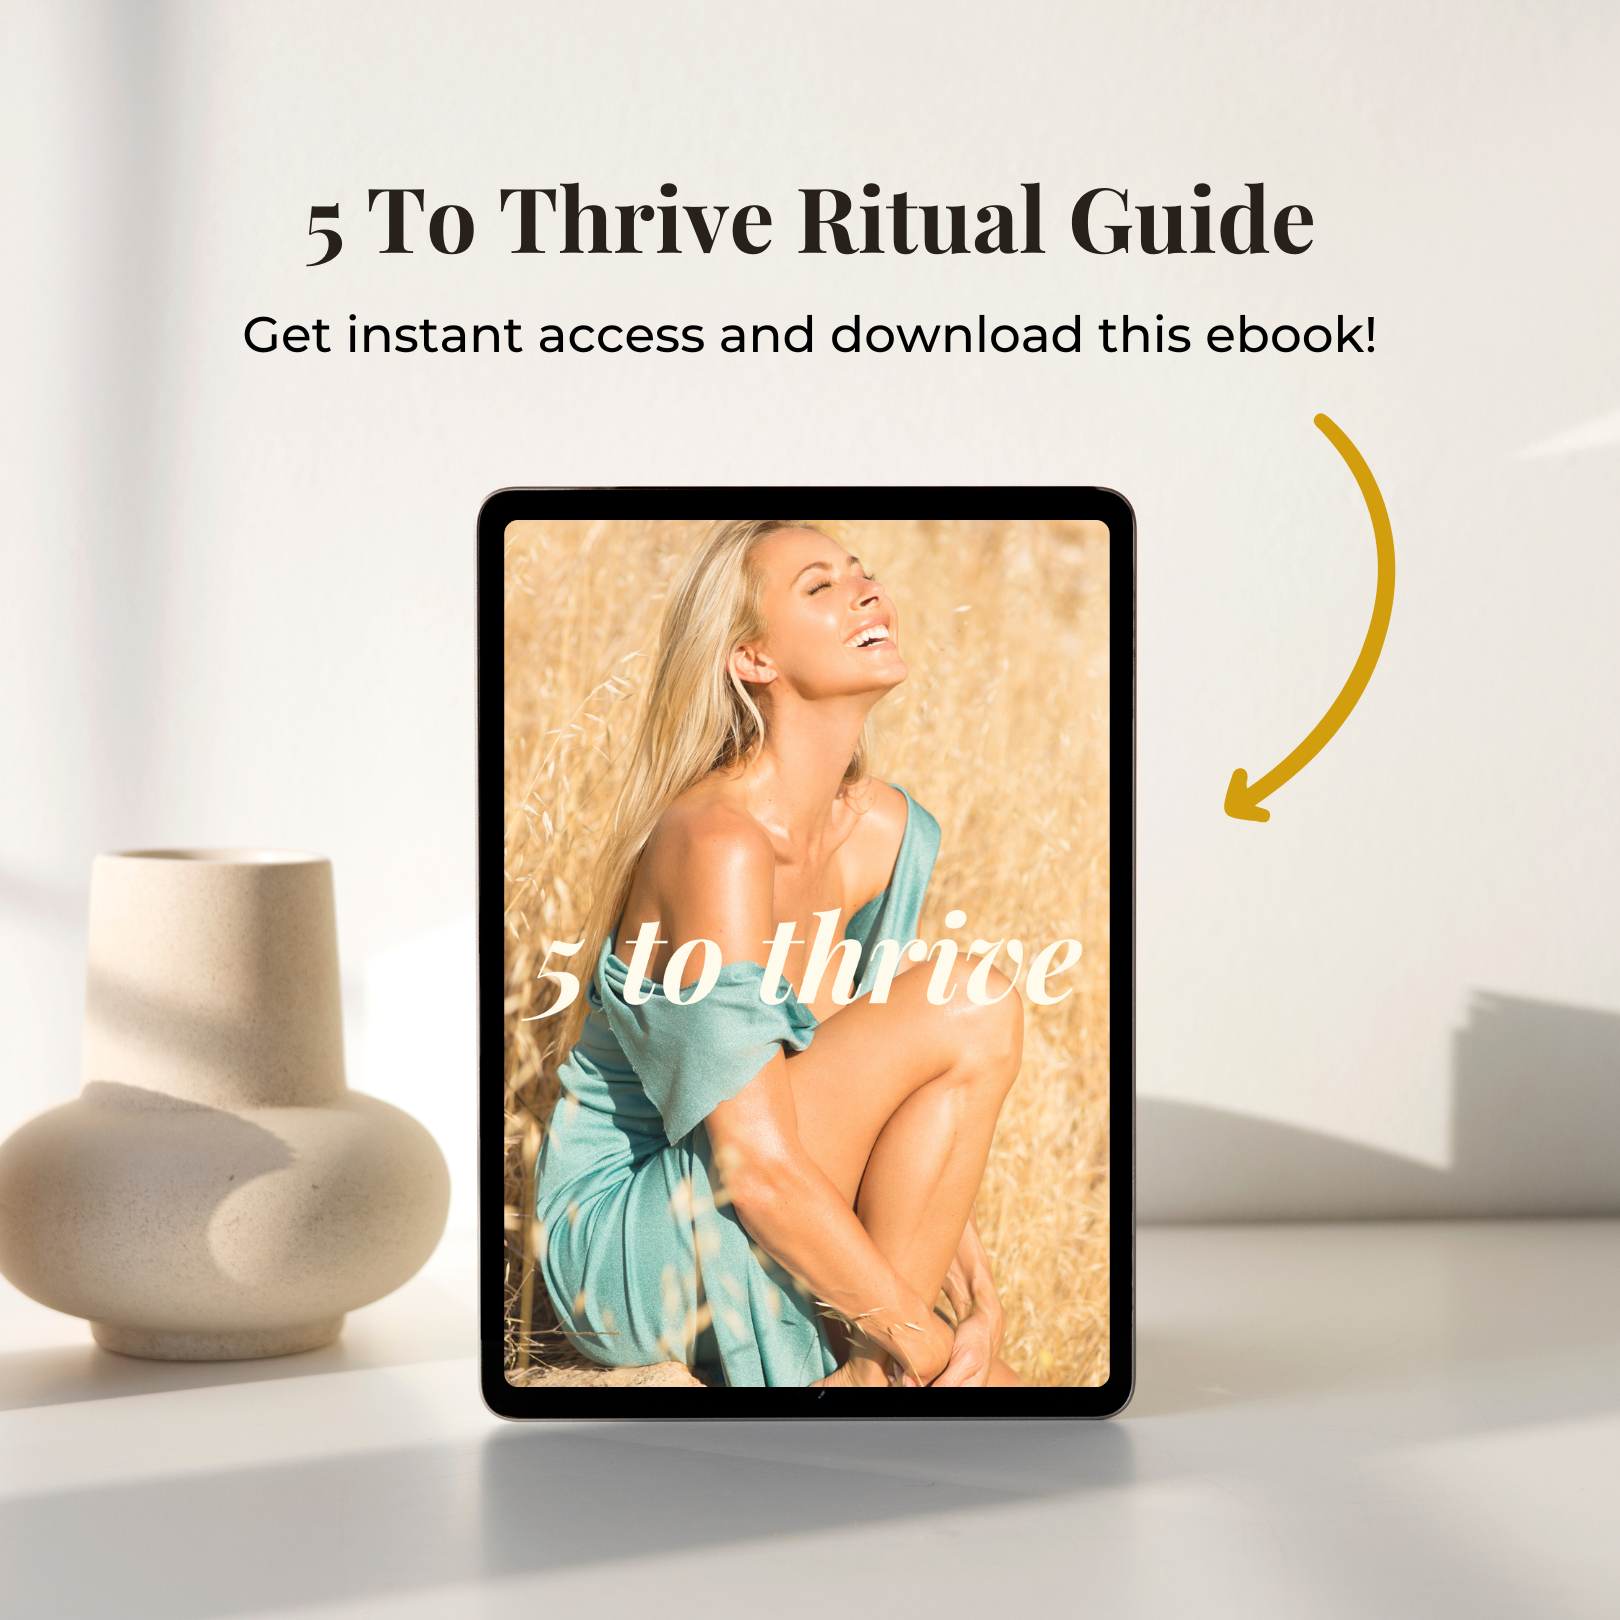 5 To Thrive Ritual Guide